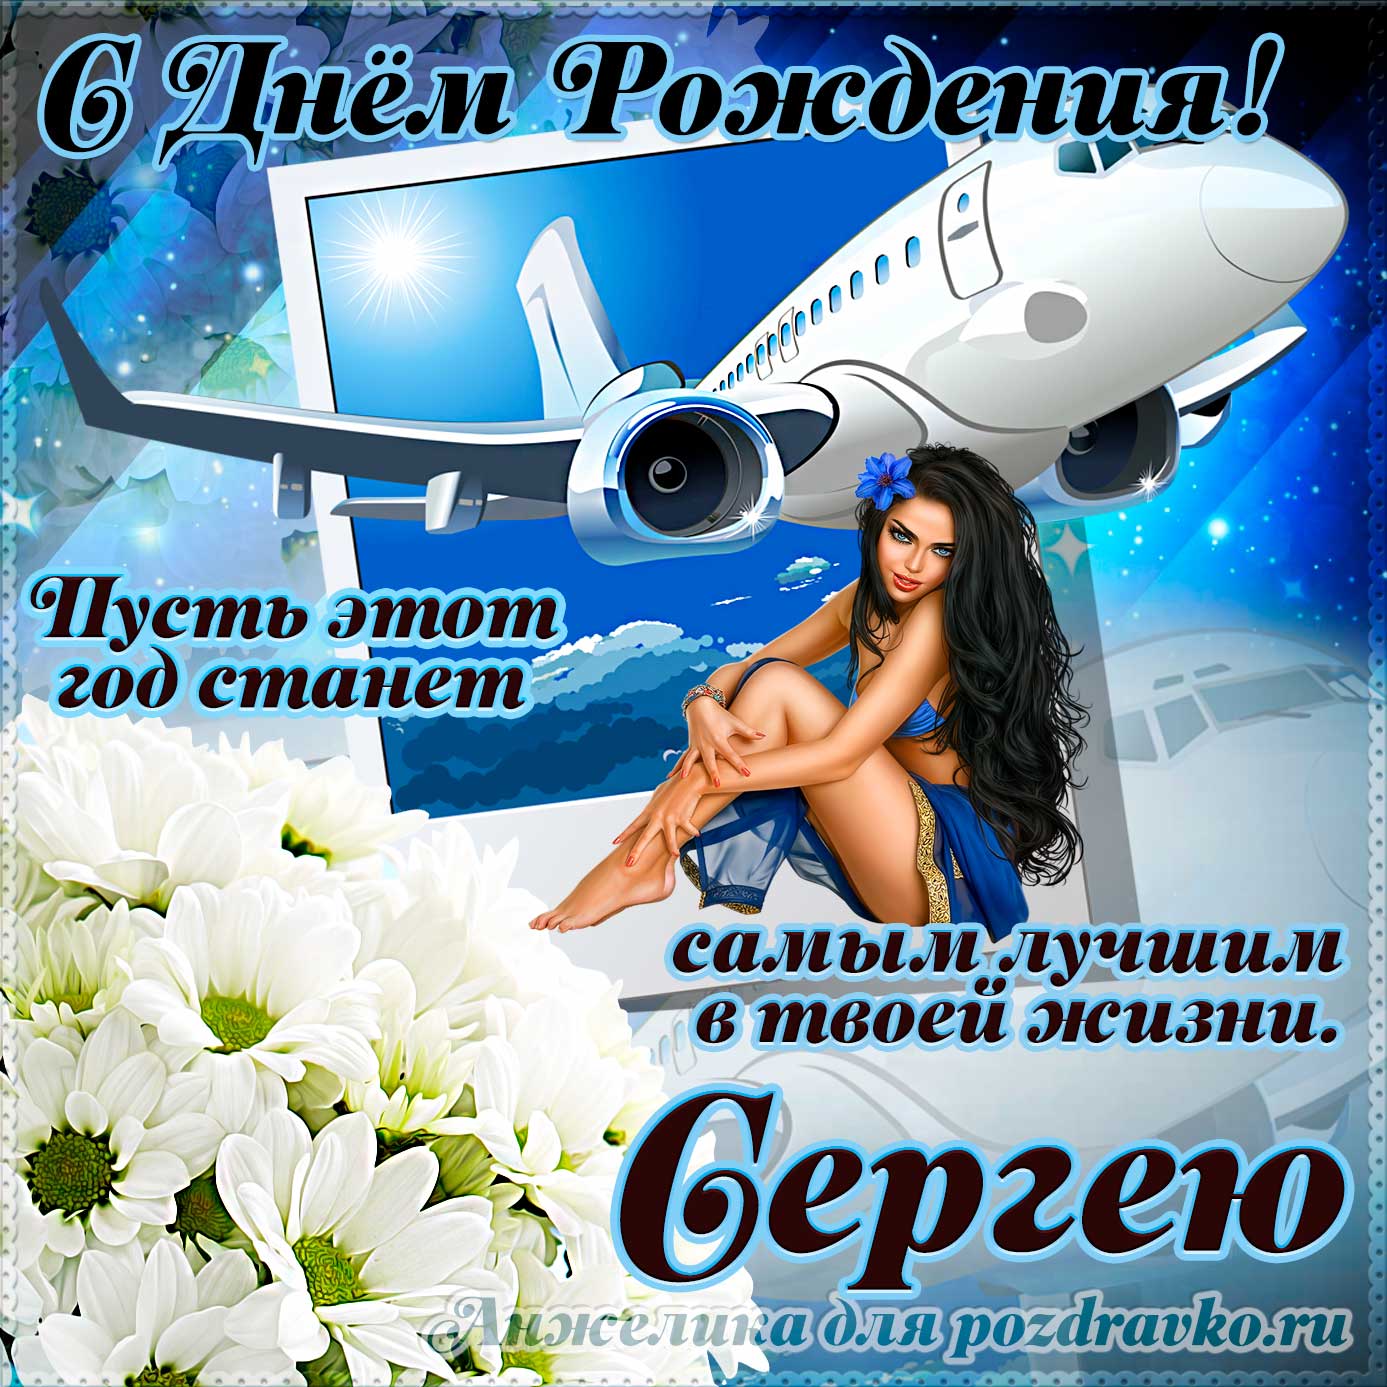 Открытка - Сергею на день рождения с красивым пожеланием самолетом и девушкой. Скачать бесплатно или отправить картинку.